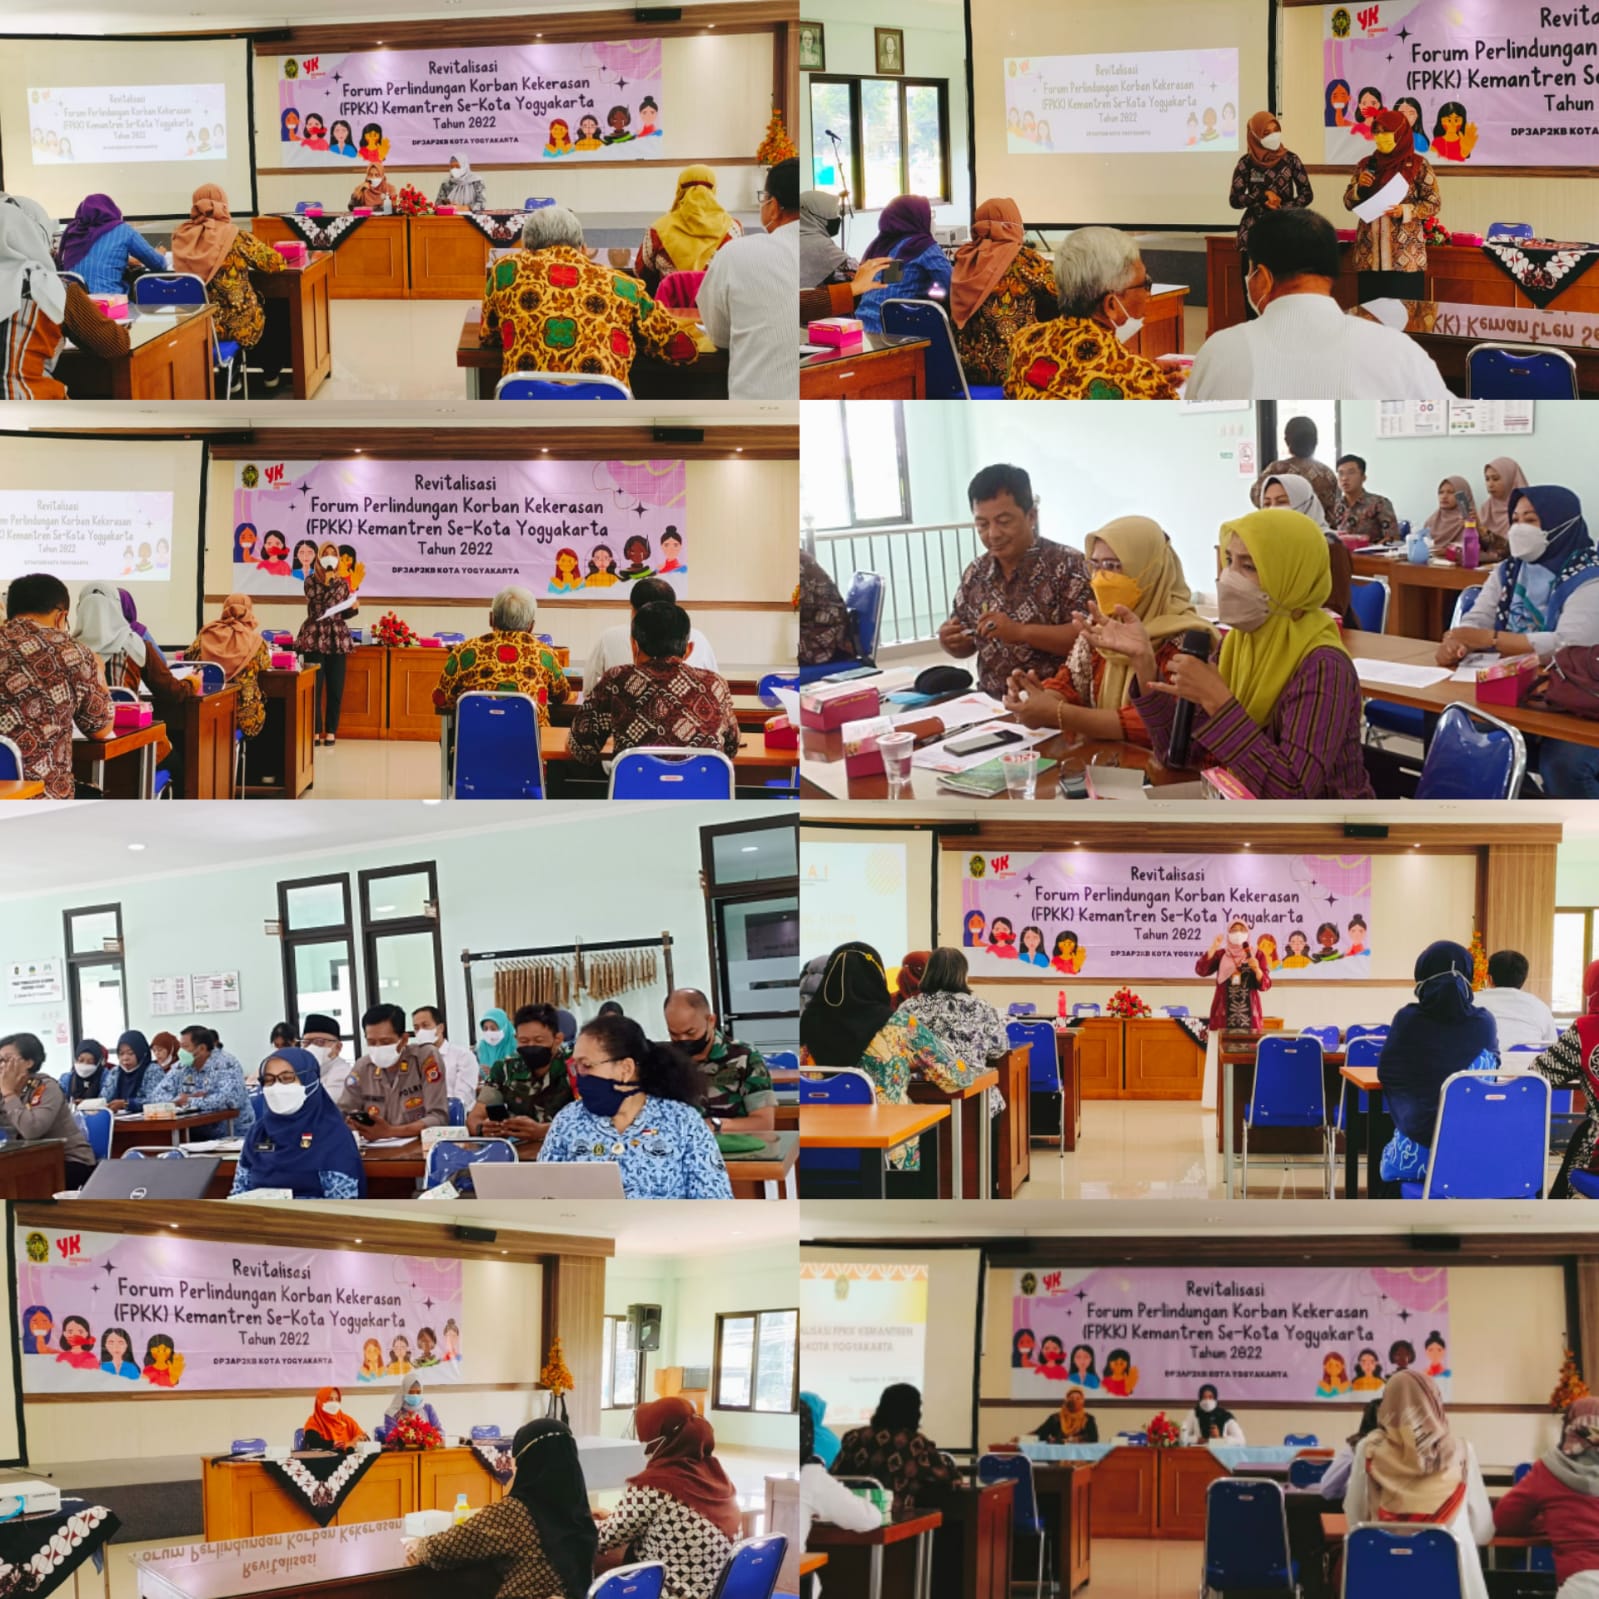 Revitalisasi Forum Perlindungan Korban Kekerasan (FPKK) Kemantren Se-Kota Yogyakarta